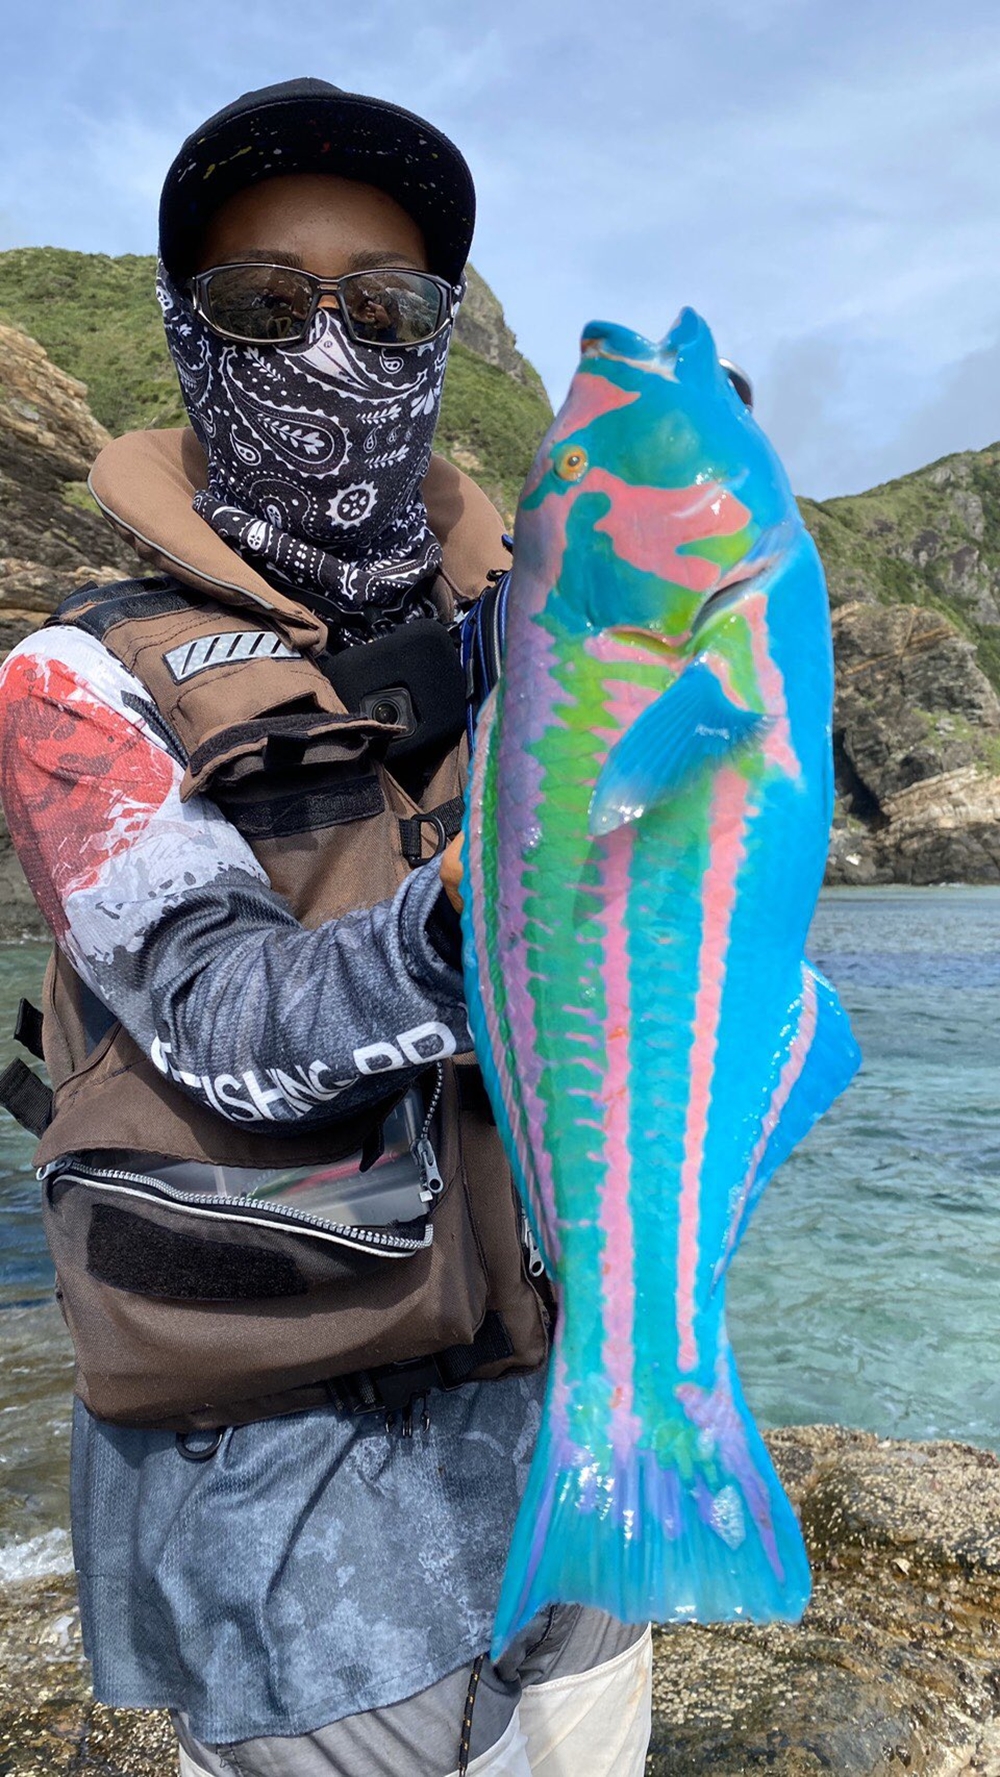 とんでもない色の魚が釣れた 絵筆洗うバケツの中みたいな色 沖縄で釣り上げられたド派手怪魚の正体とは ねとらぼ